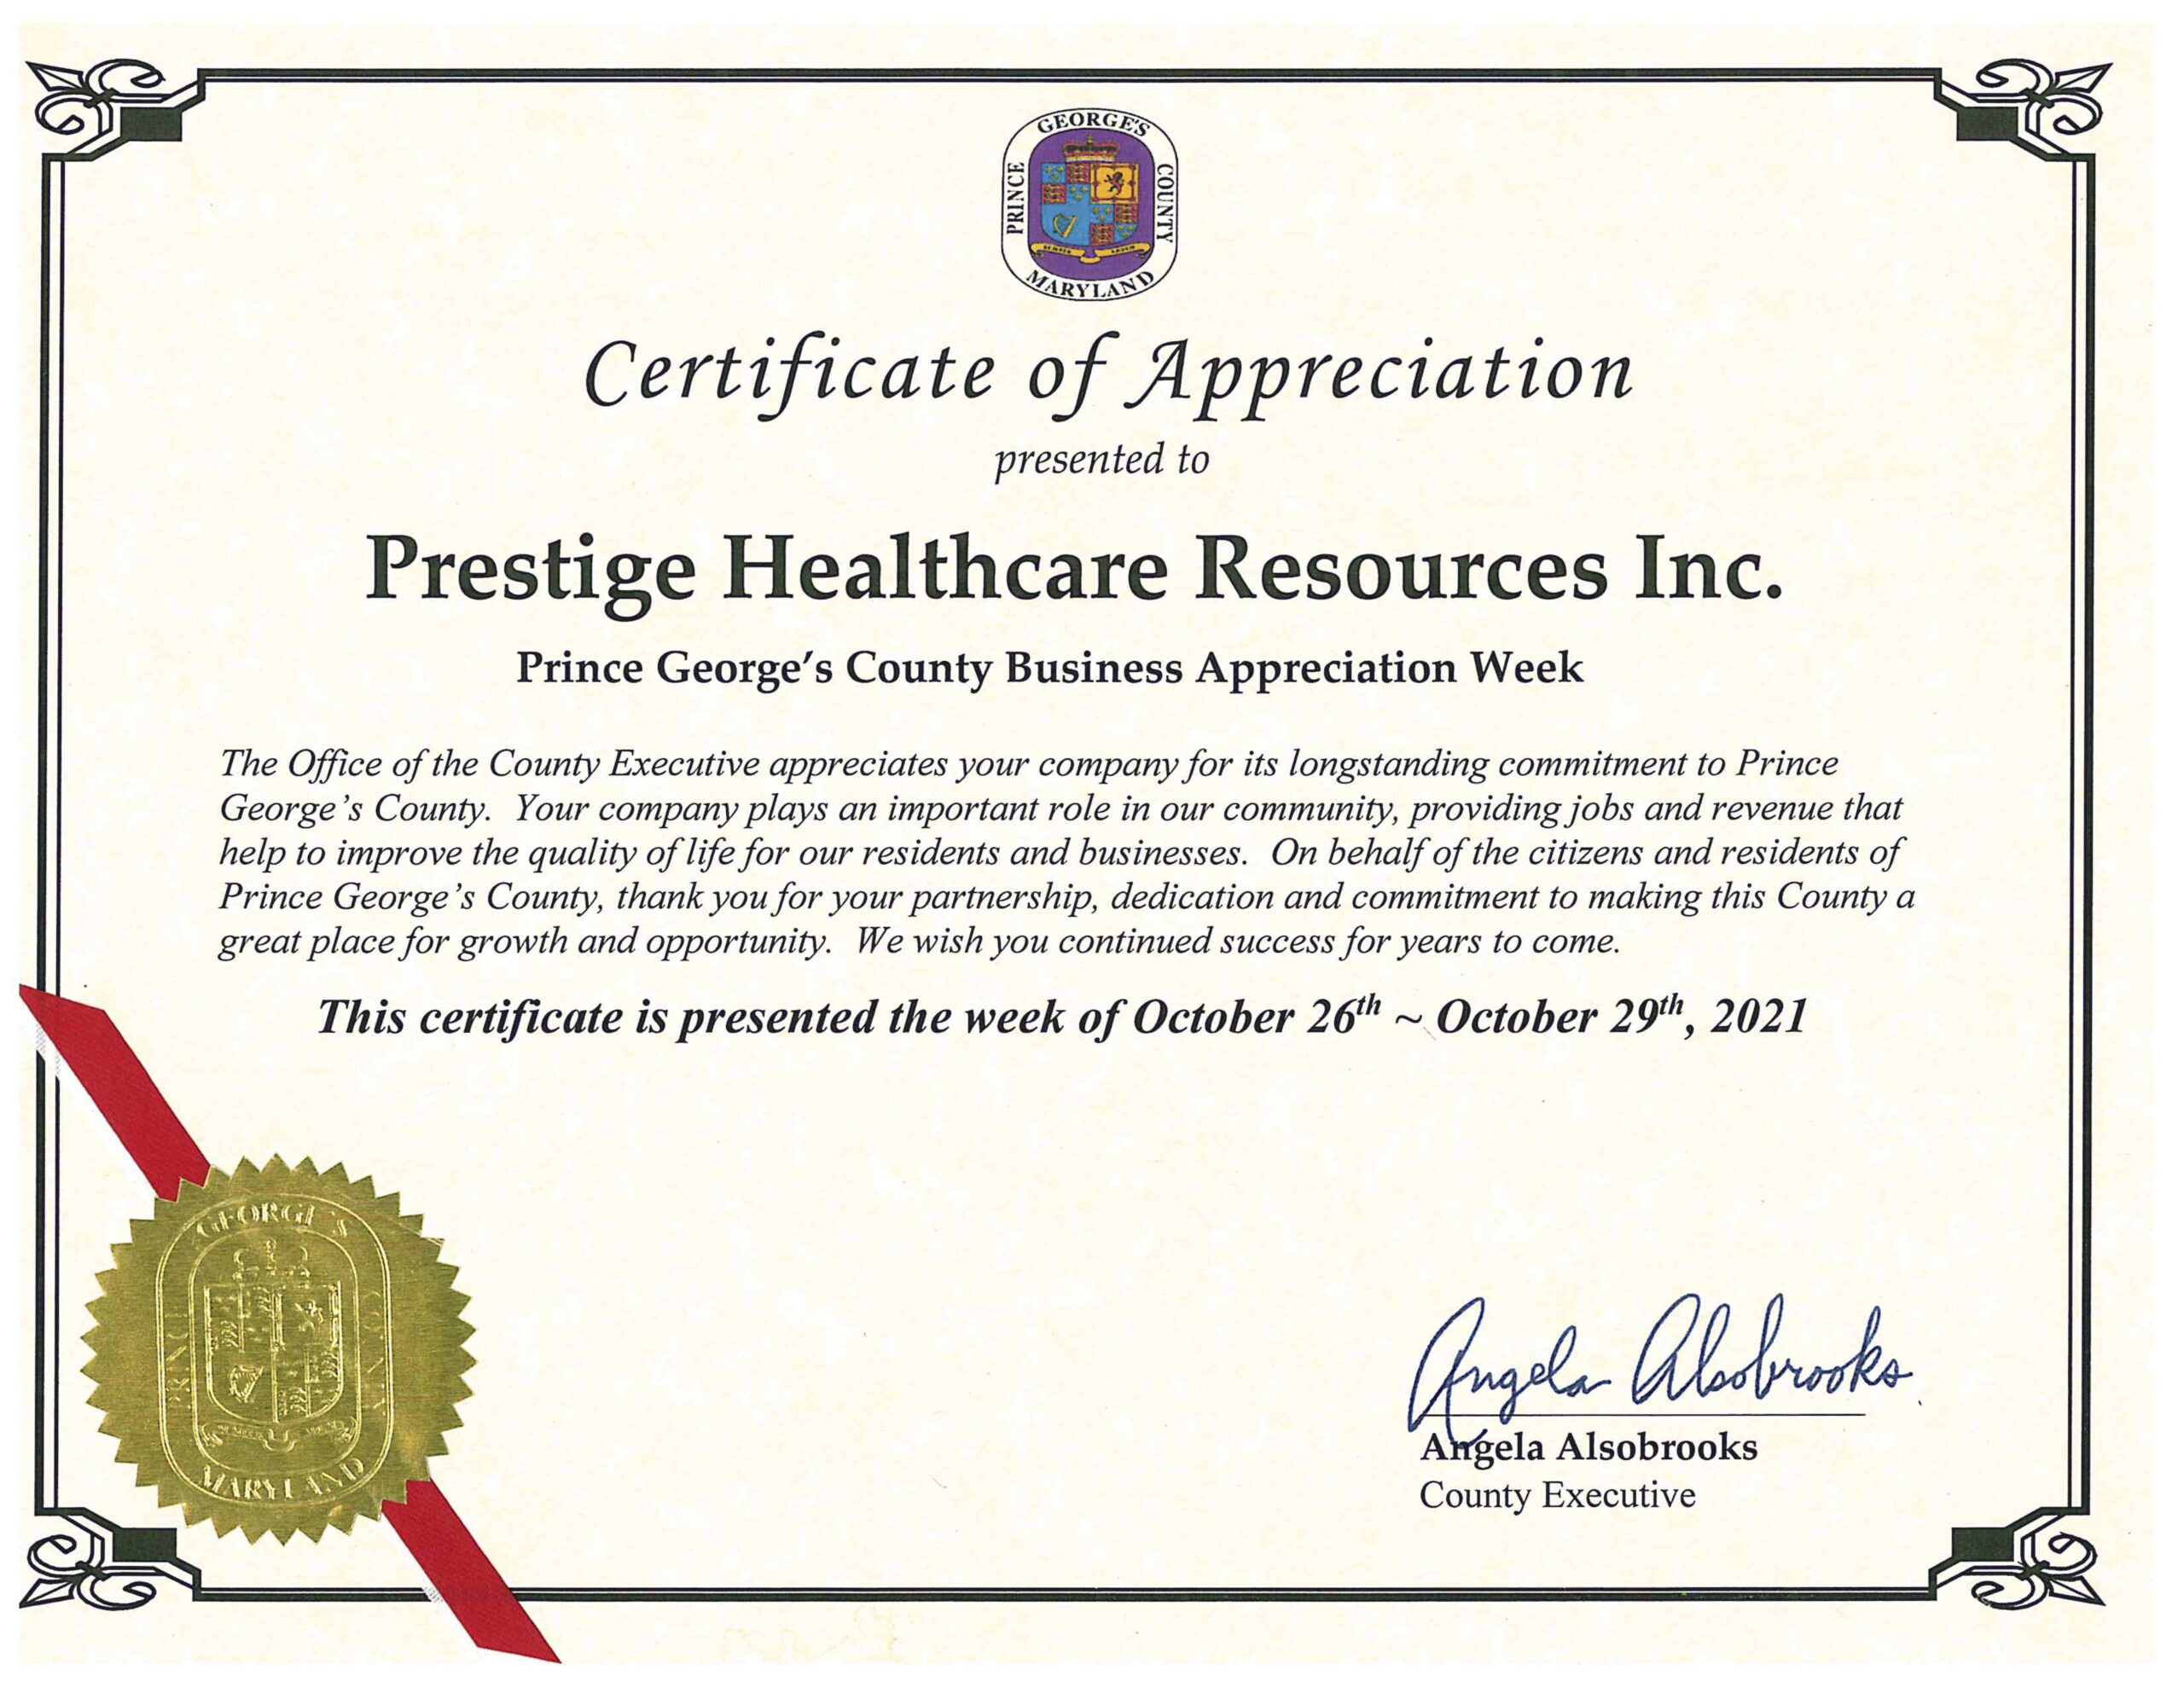 Certificate of Appreciation Image